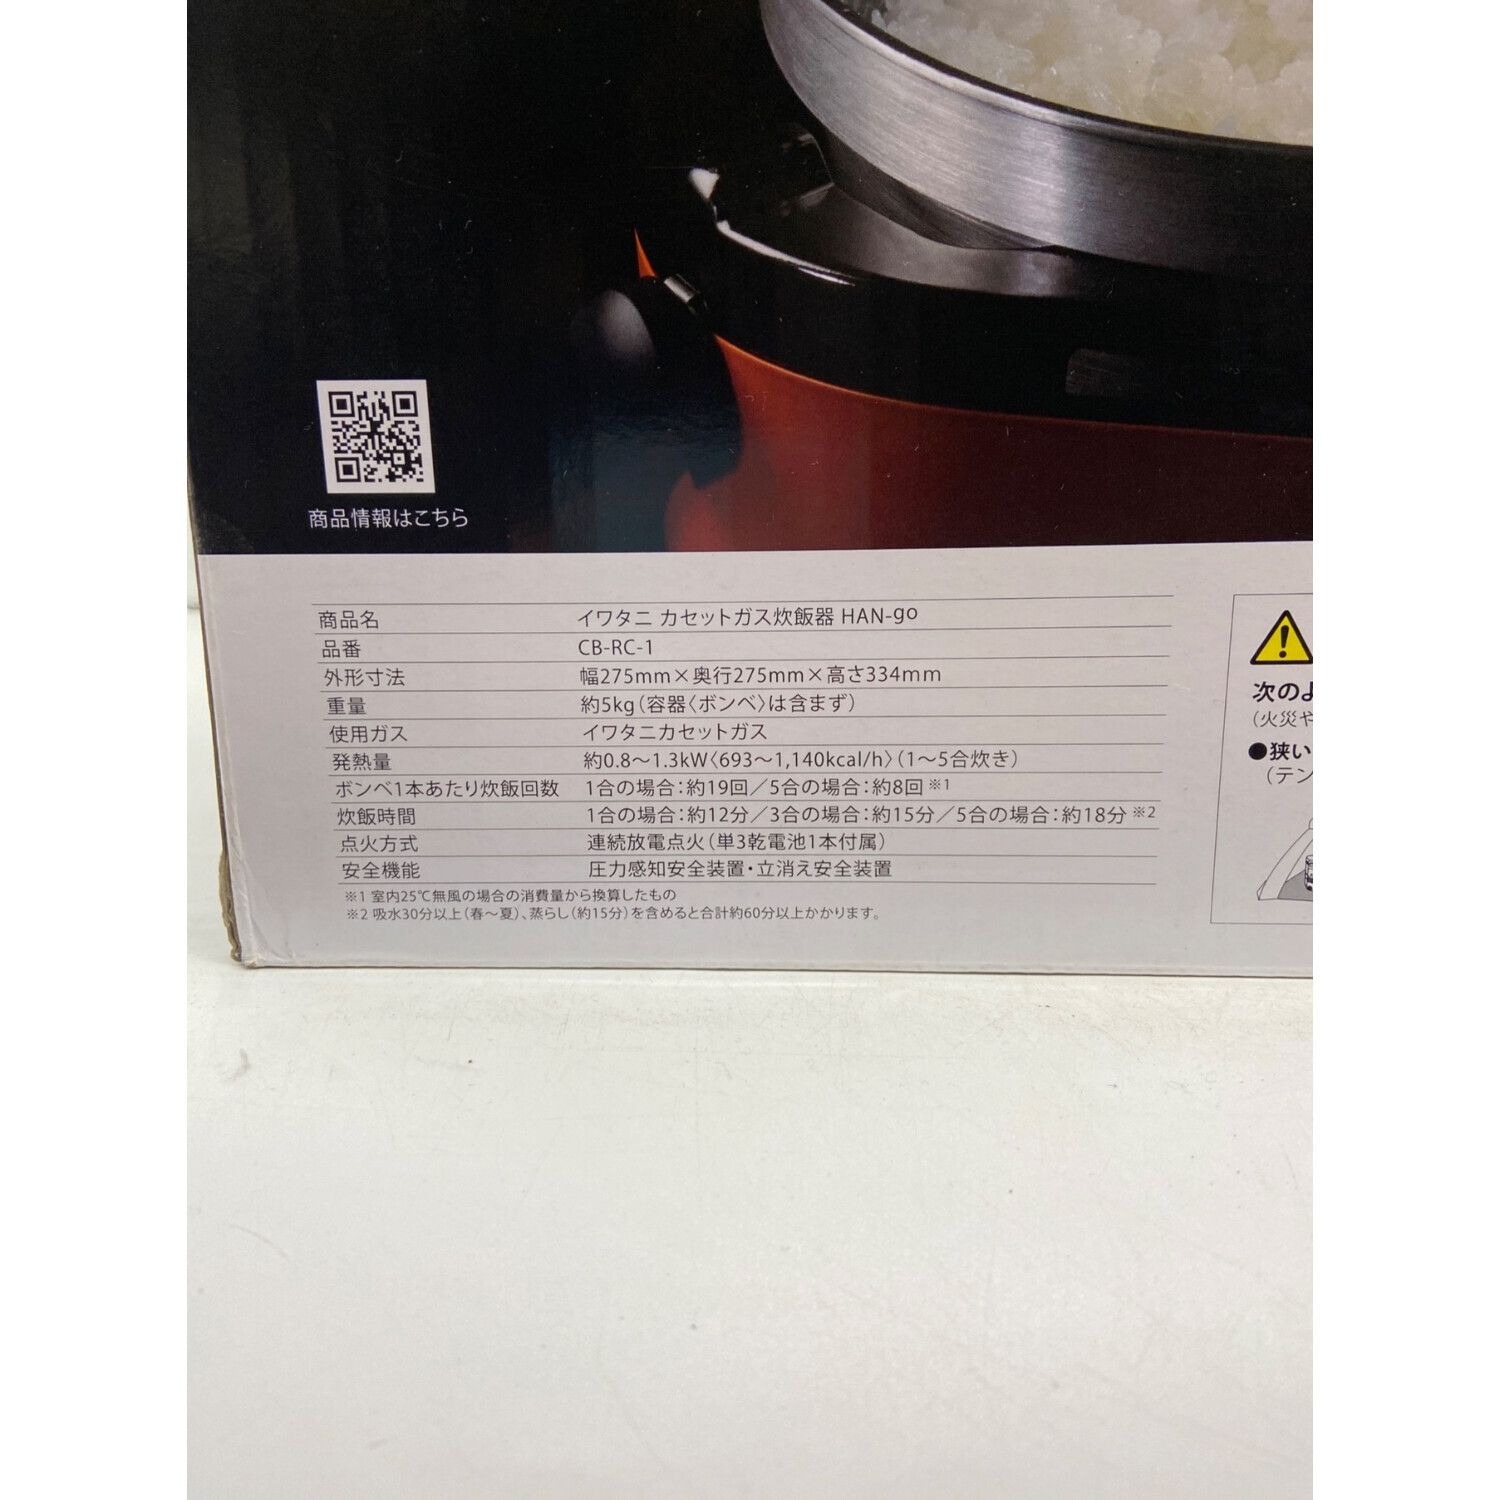 Iwatani (イワタニ) カセットガス炊飯器 CB-RC-1 2021年発売モデル 5合